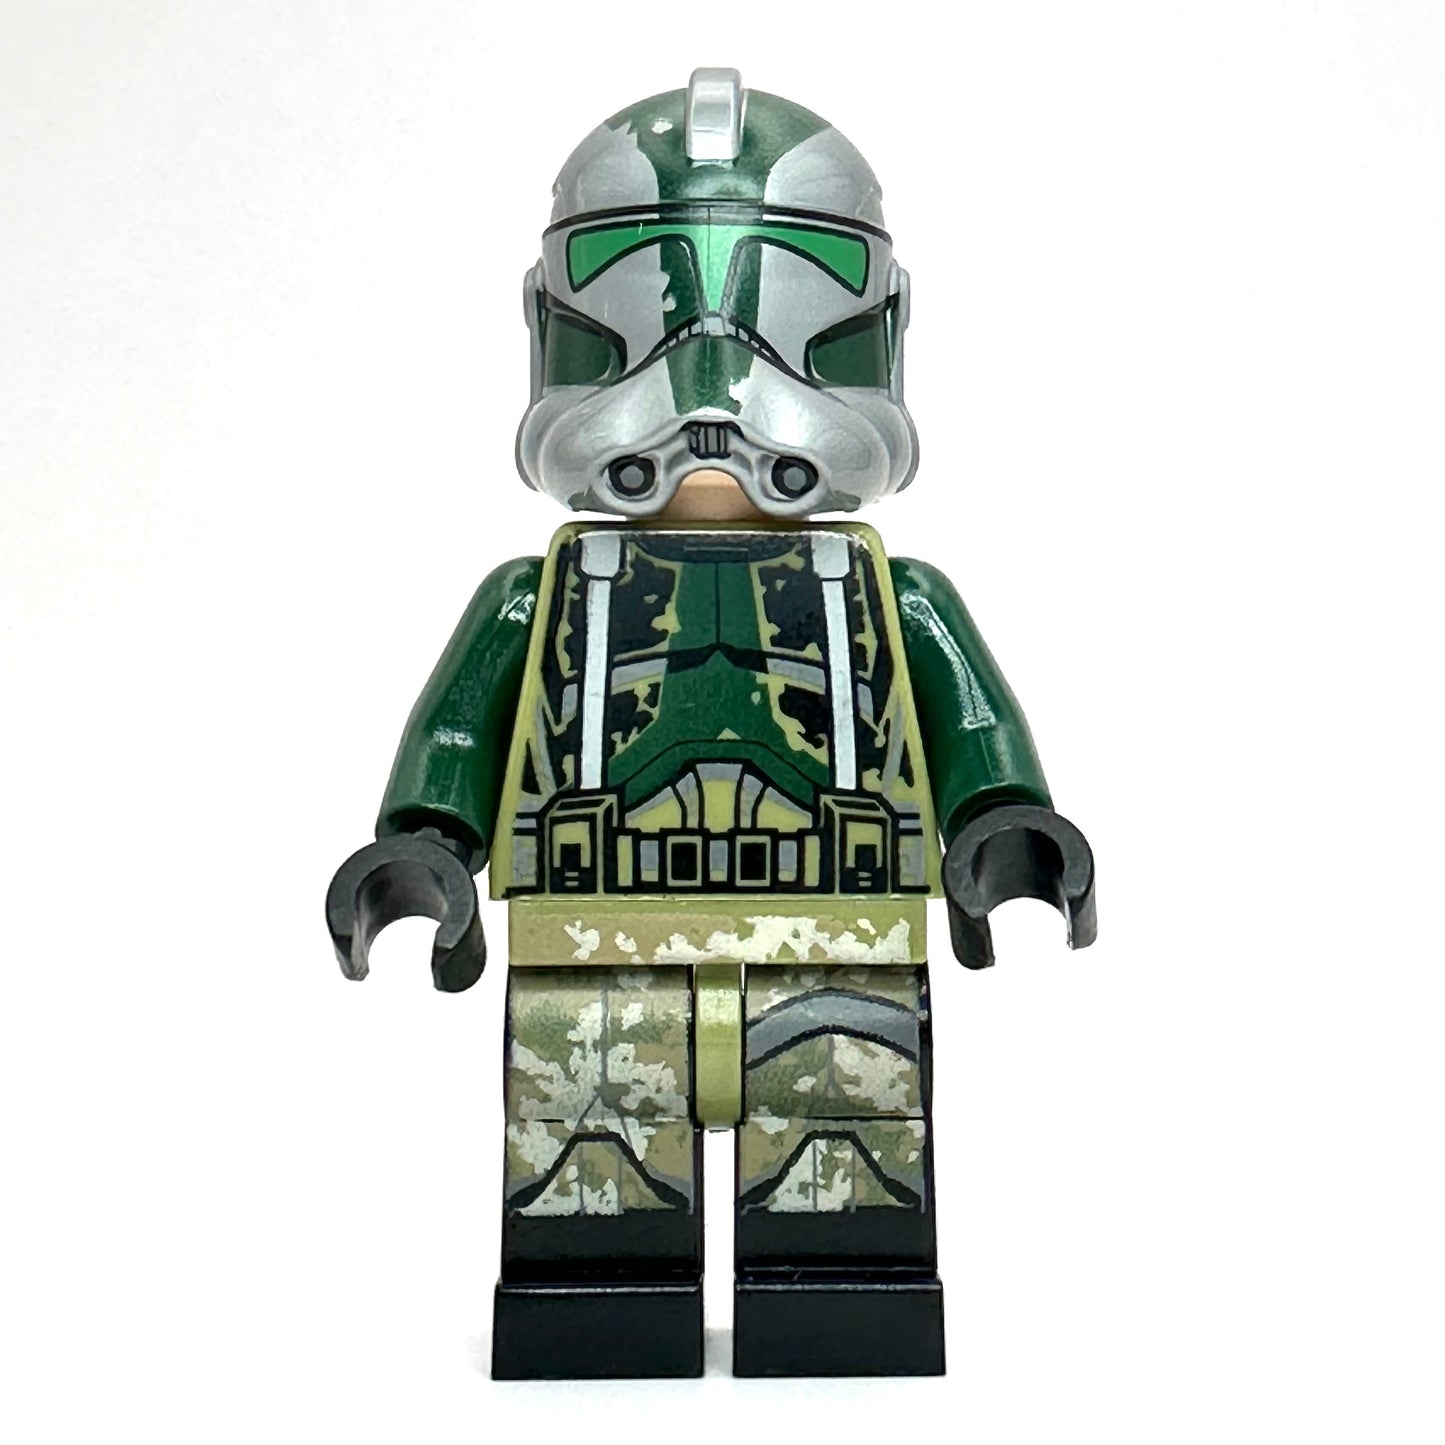 LEGO Phase 2 Commander Gree Minifigure